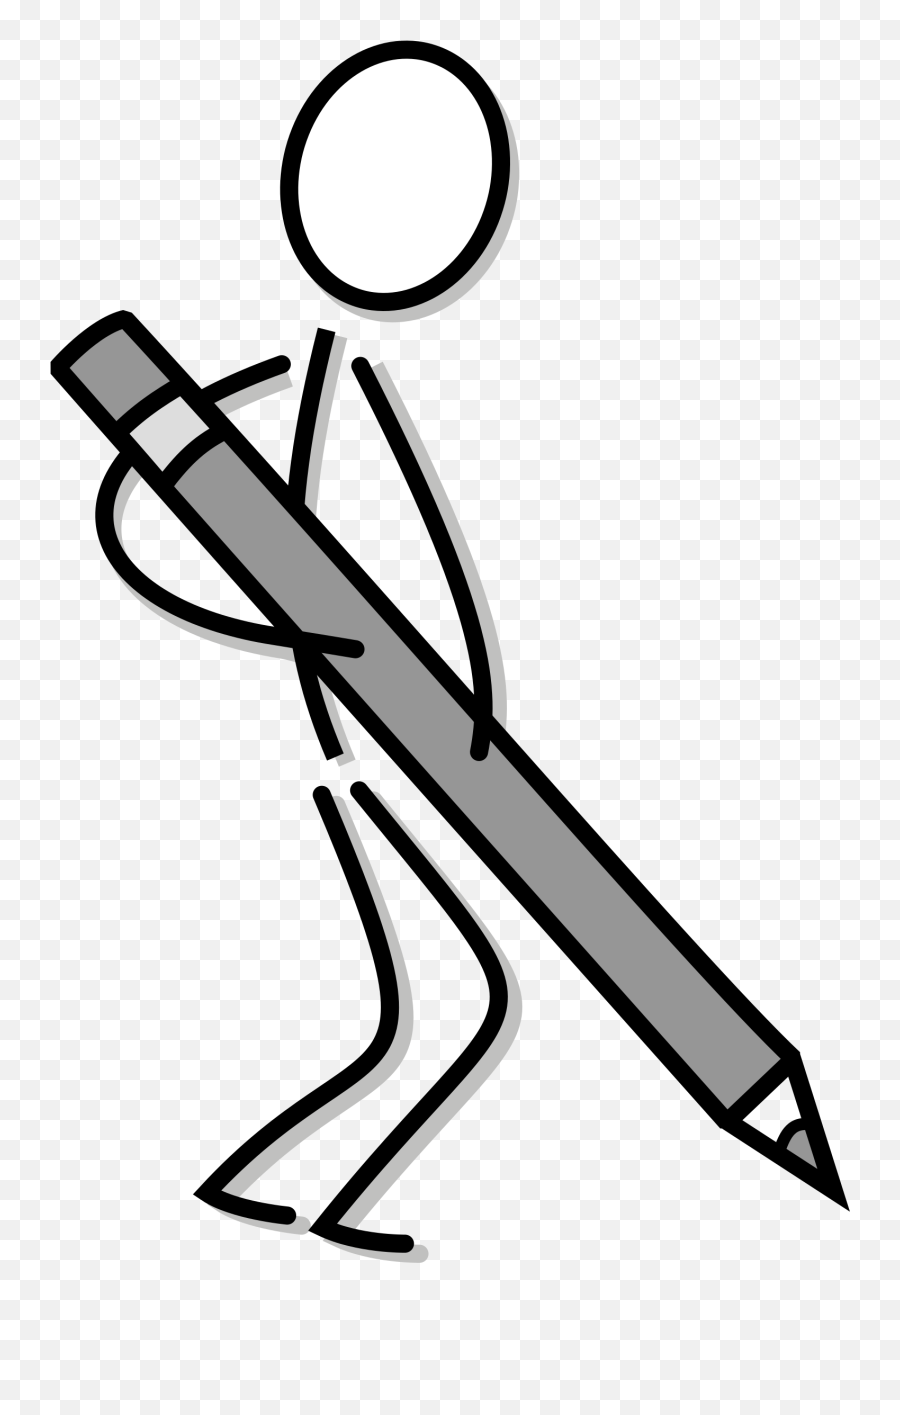 Stick Figure Drawing Line Art Writing - Writing Stick Figure Clipart Png,Stick Figure Png